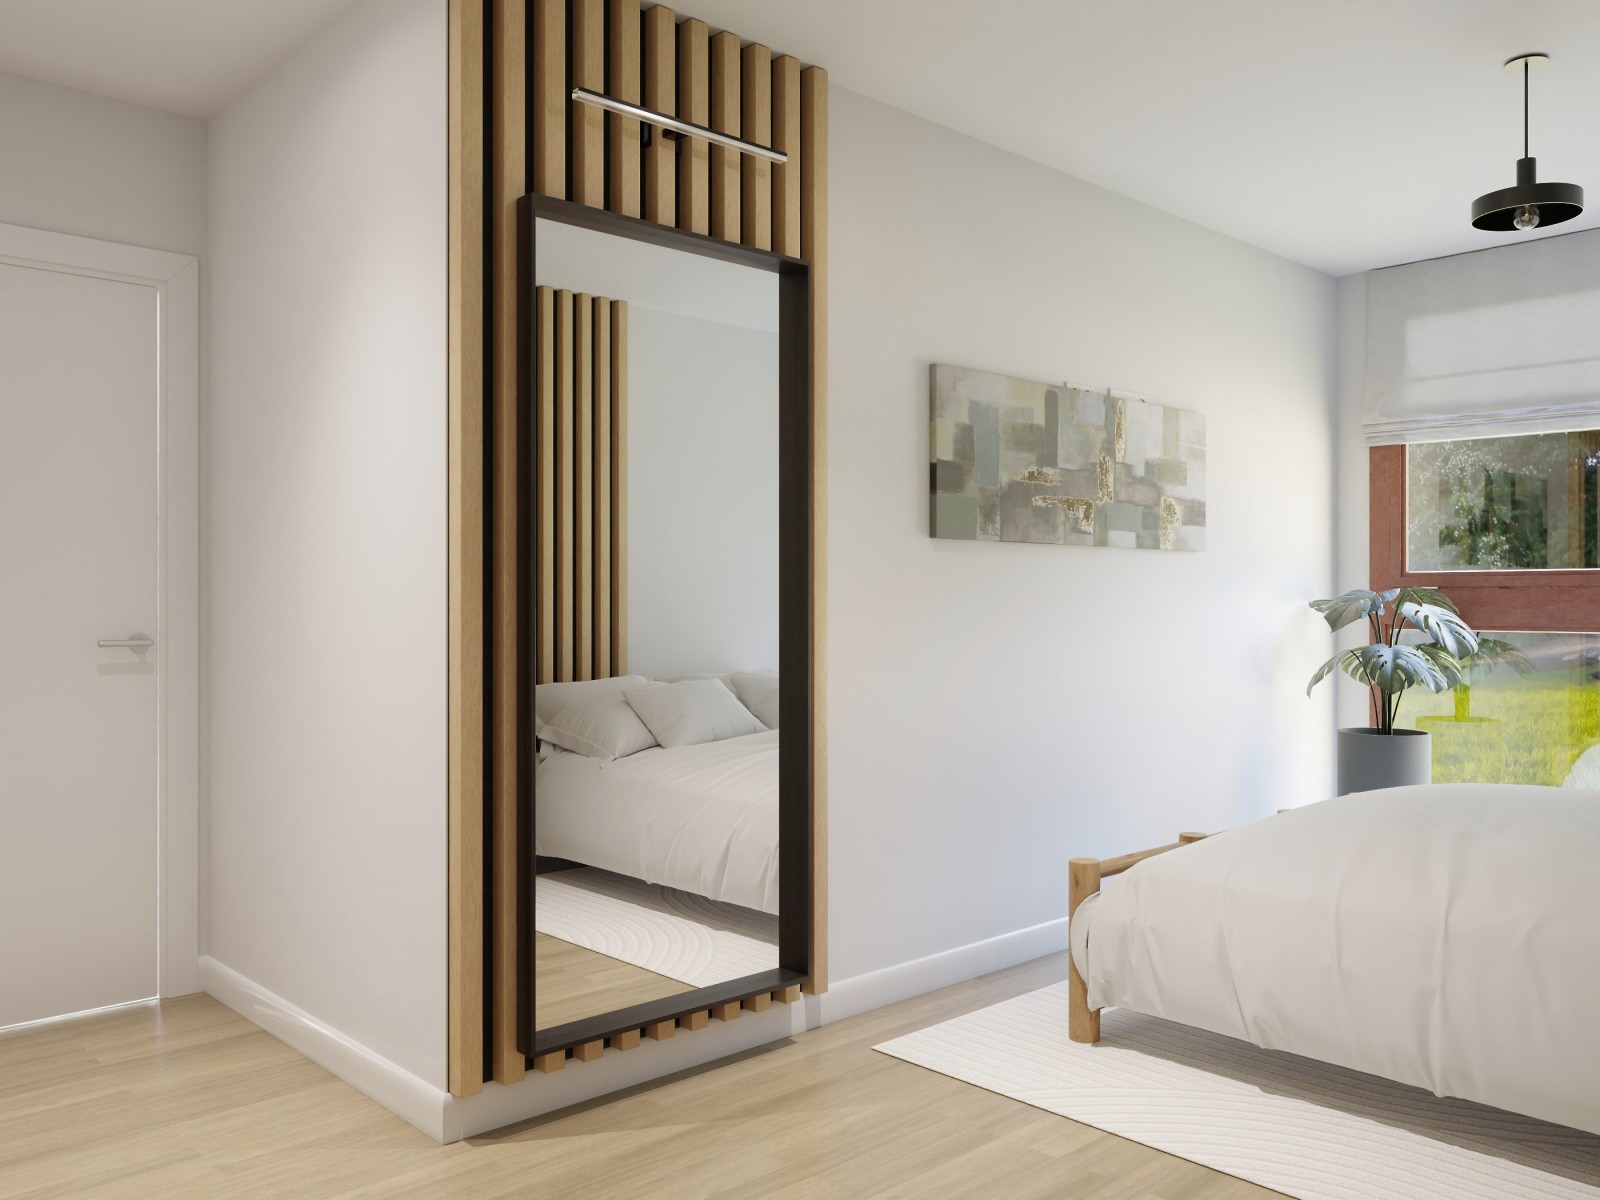 Dormitorio rústico con listones de madera 